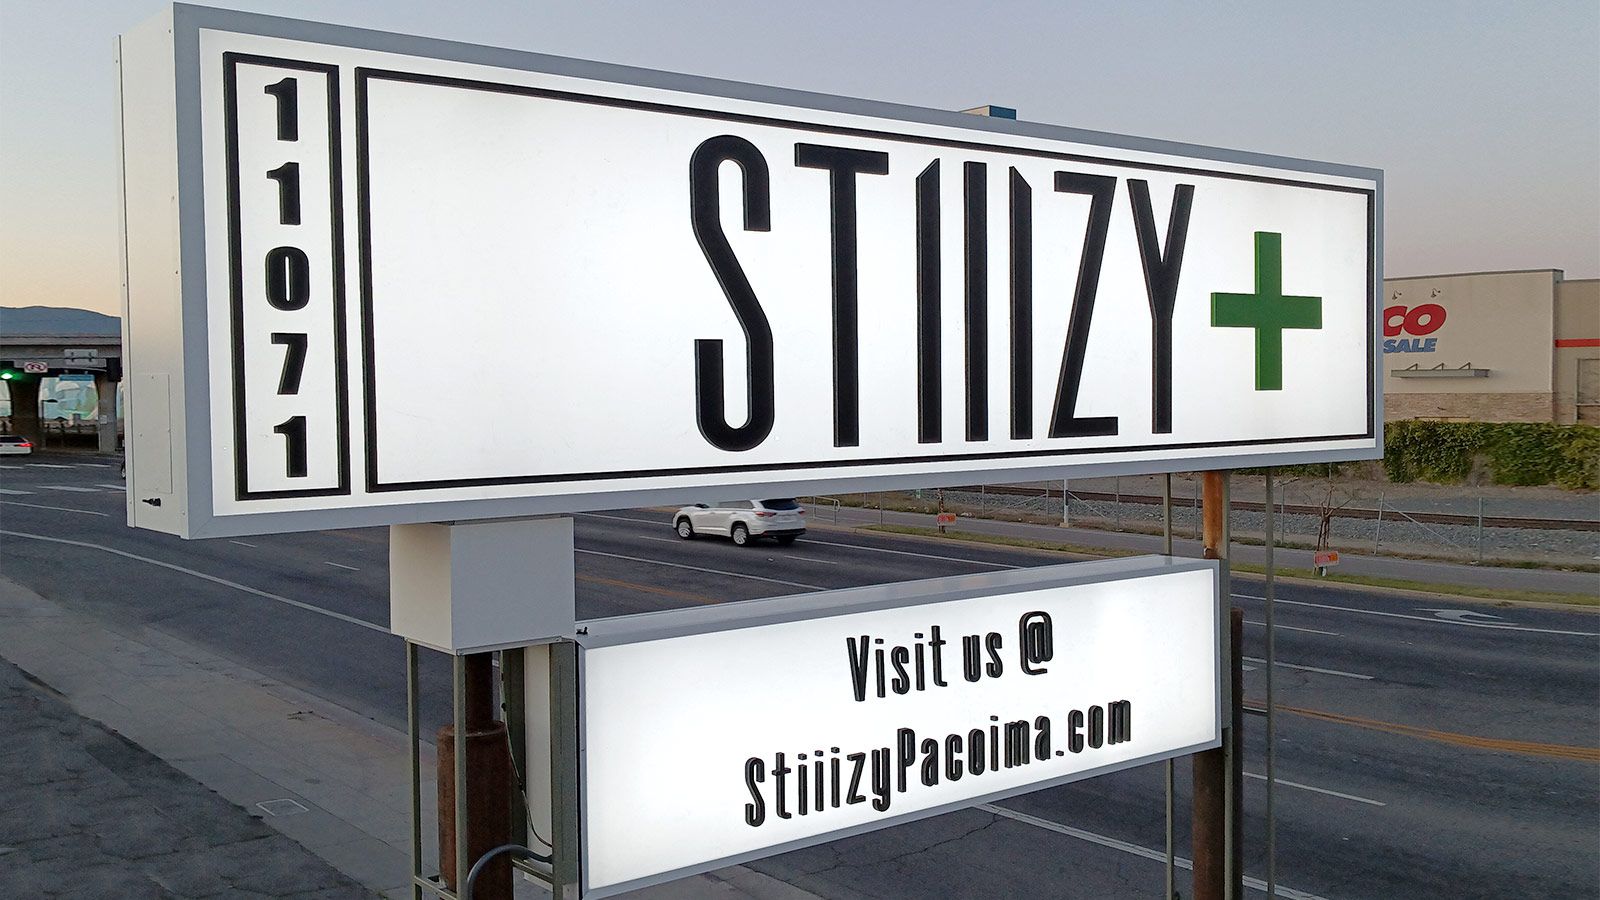 Stilizy custom pylon signage